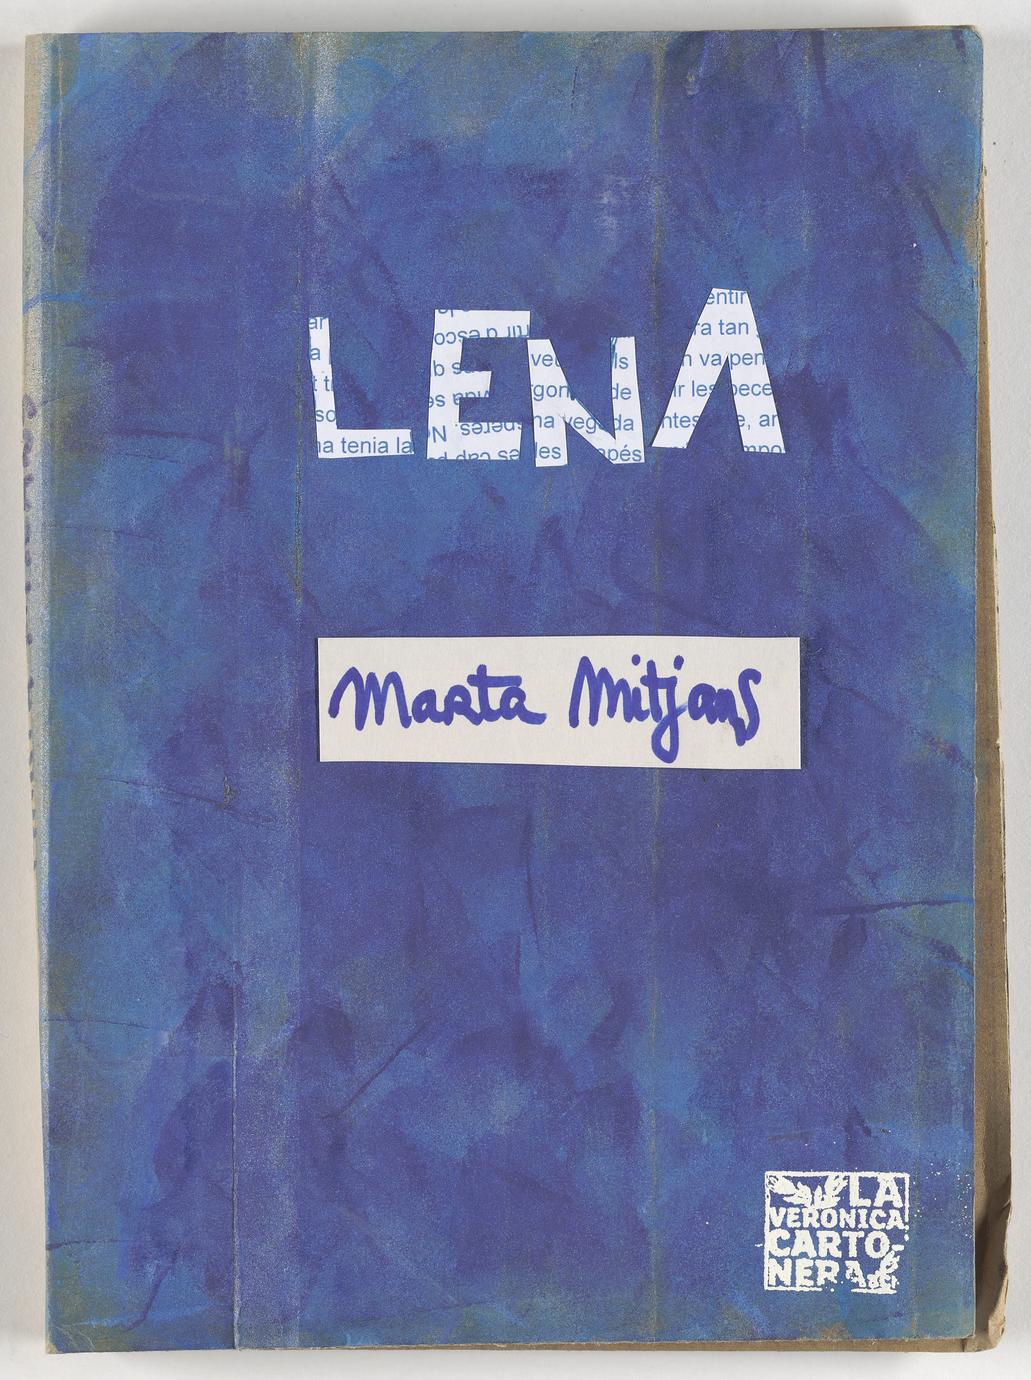 Lena (1 of 3)